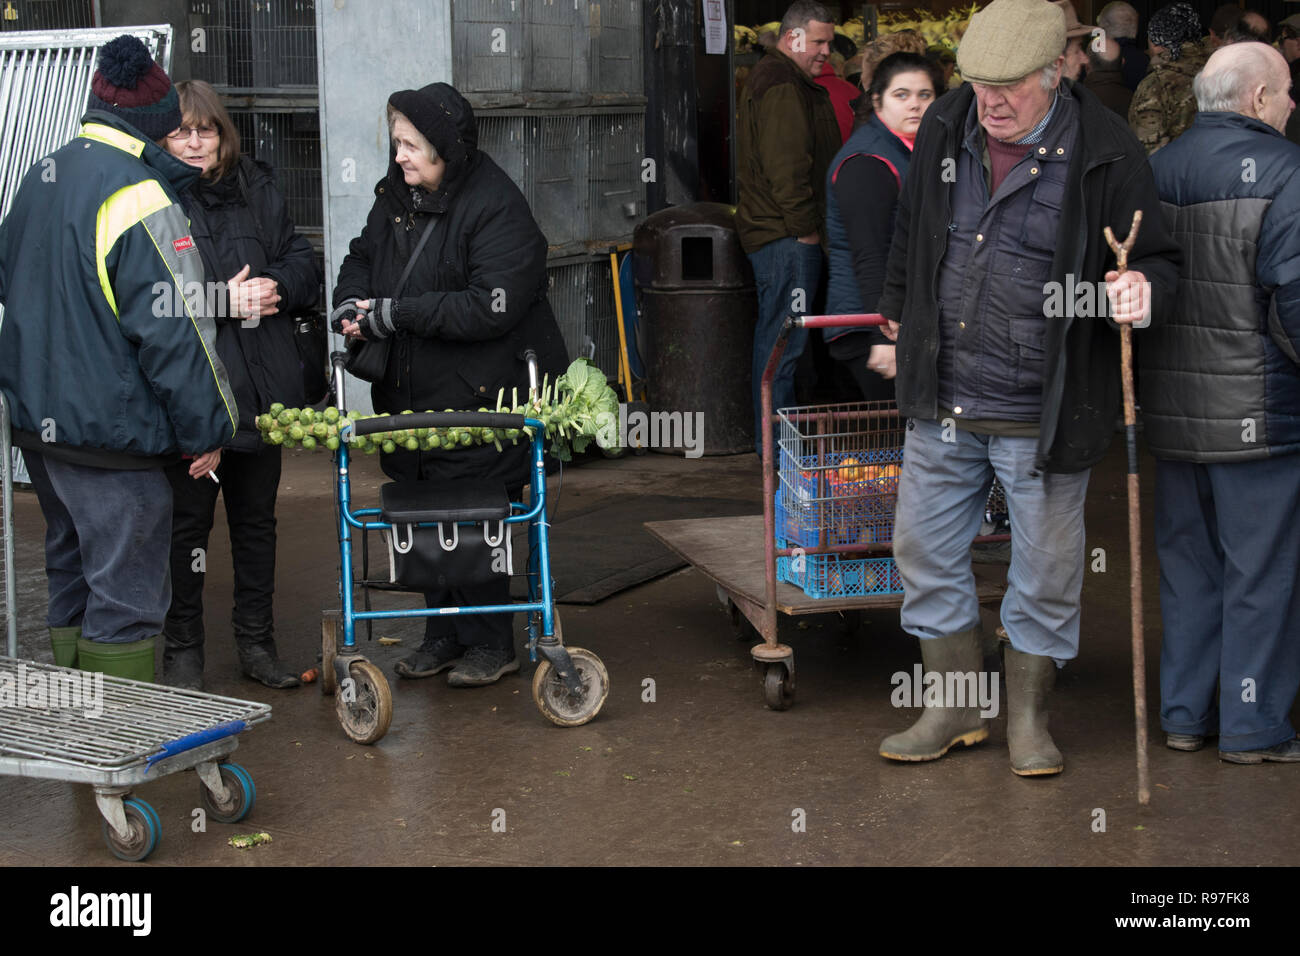 Pauvreté rurale Royaume-Uni. Brussel germe sur un marché de Noël de tige de bâton Norfolk Angleterre. HOMER SYKES des années 2018 2010. Banque D'Images